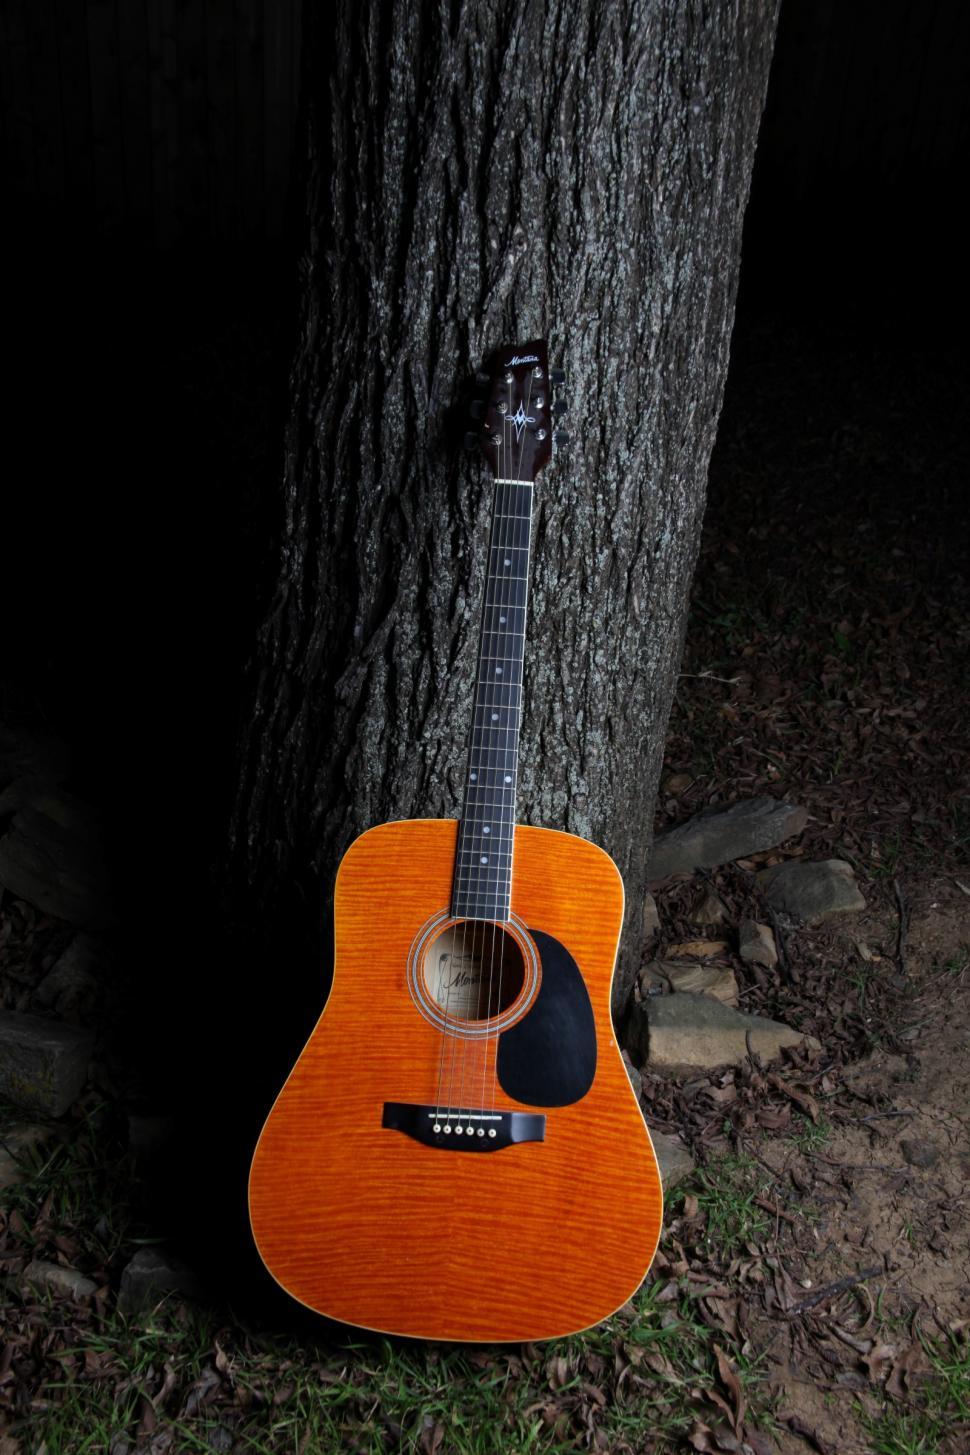 Free Image of Guitar sitting next to tree. 